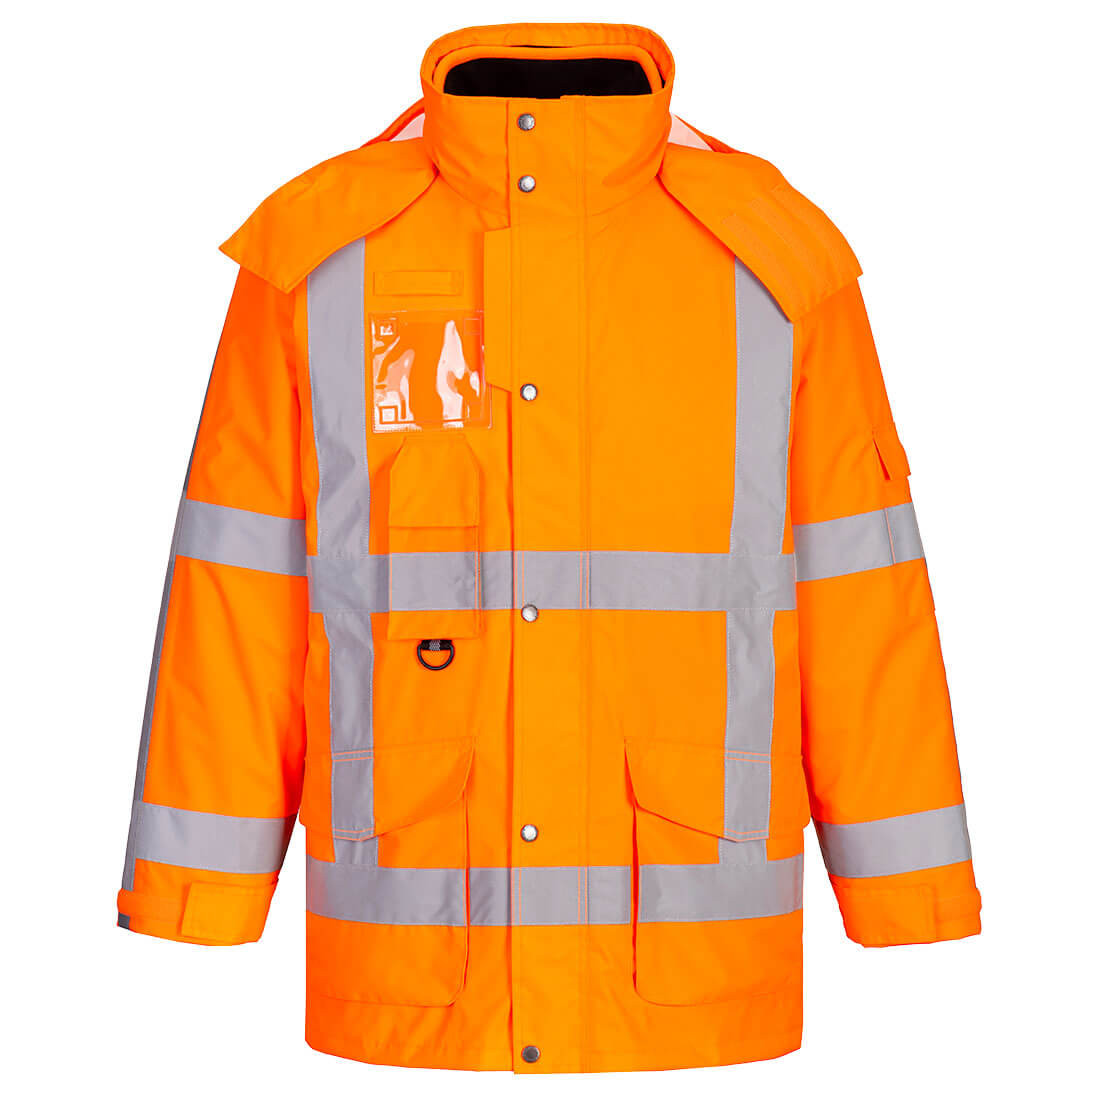 RWS HiVis 3in1 Traffic Jacket - Safetywear